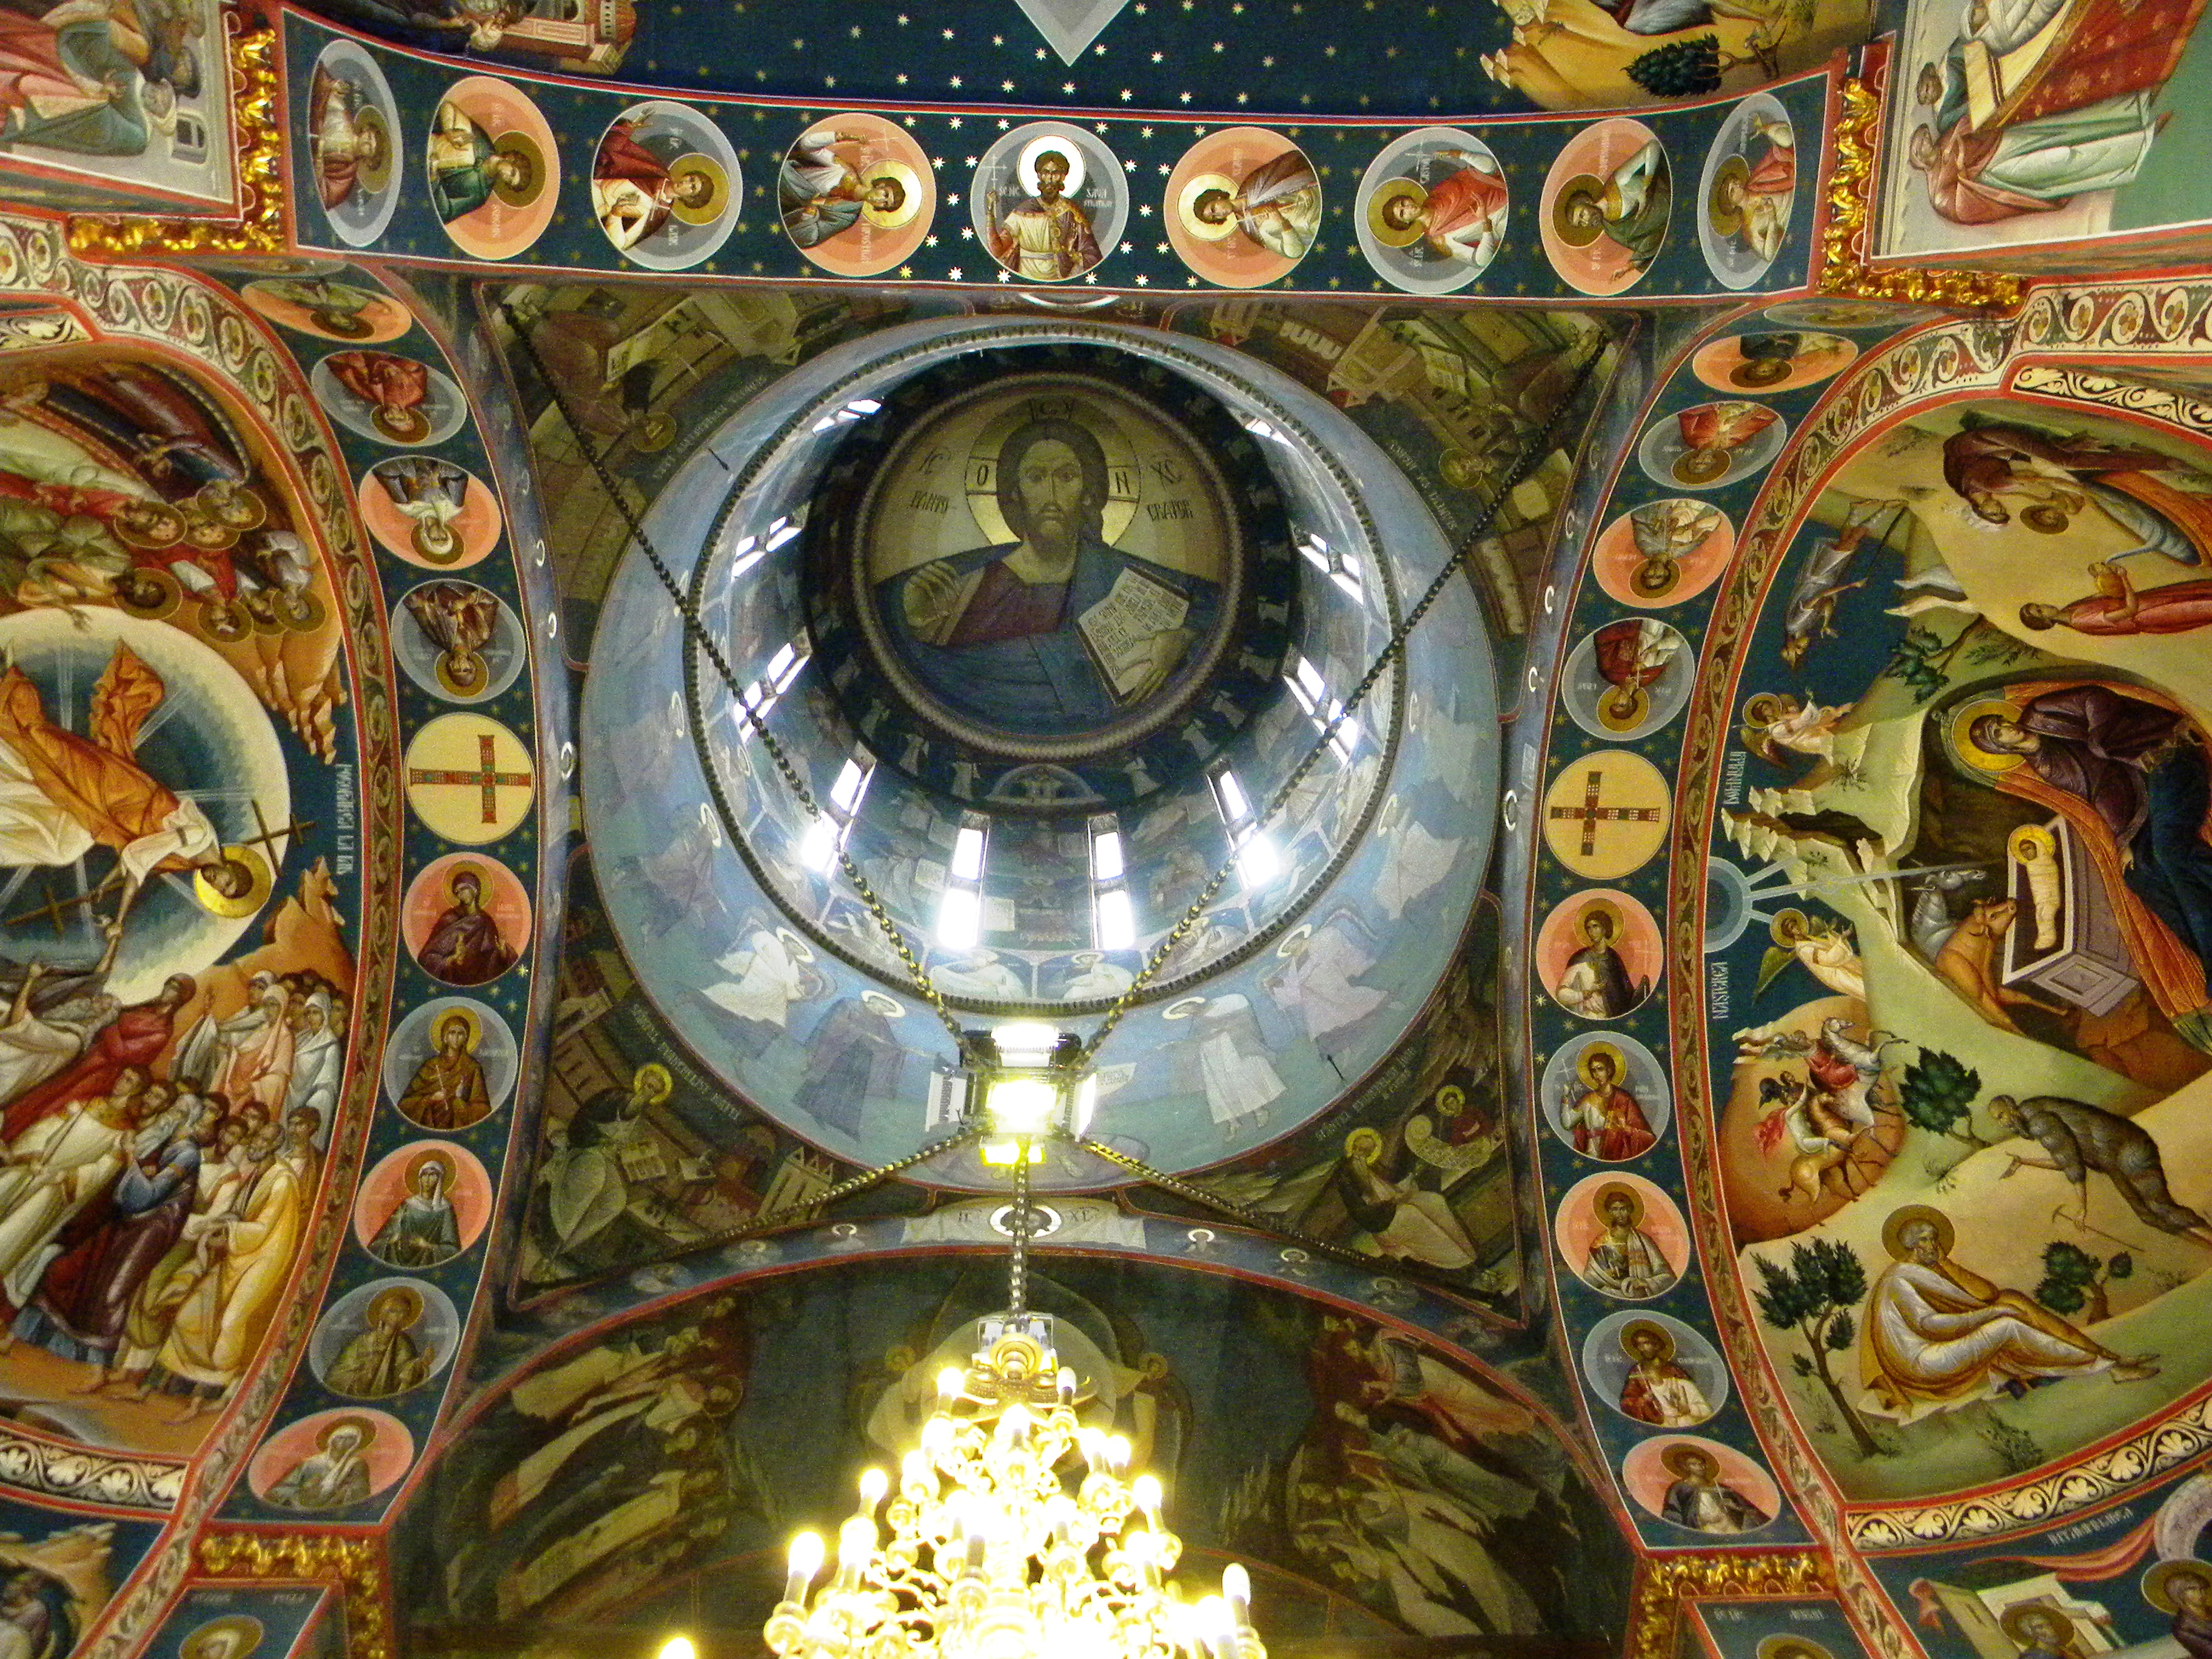 ROMÂNIA: Slujbele în interiorul bisericilor vor putea fi reluate din 17 iunie